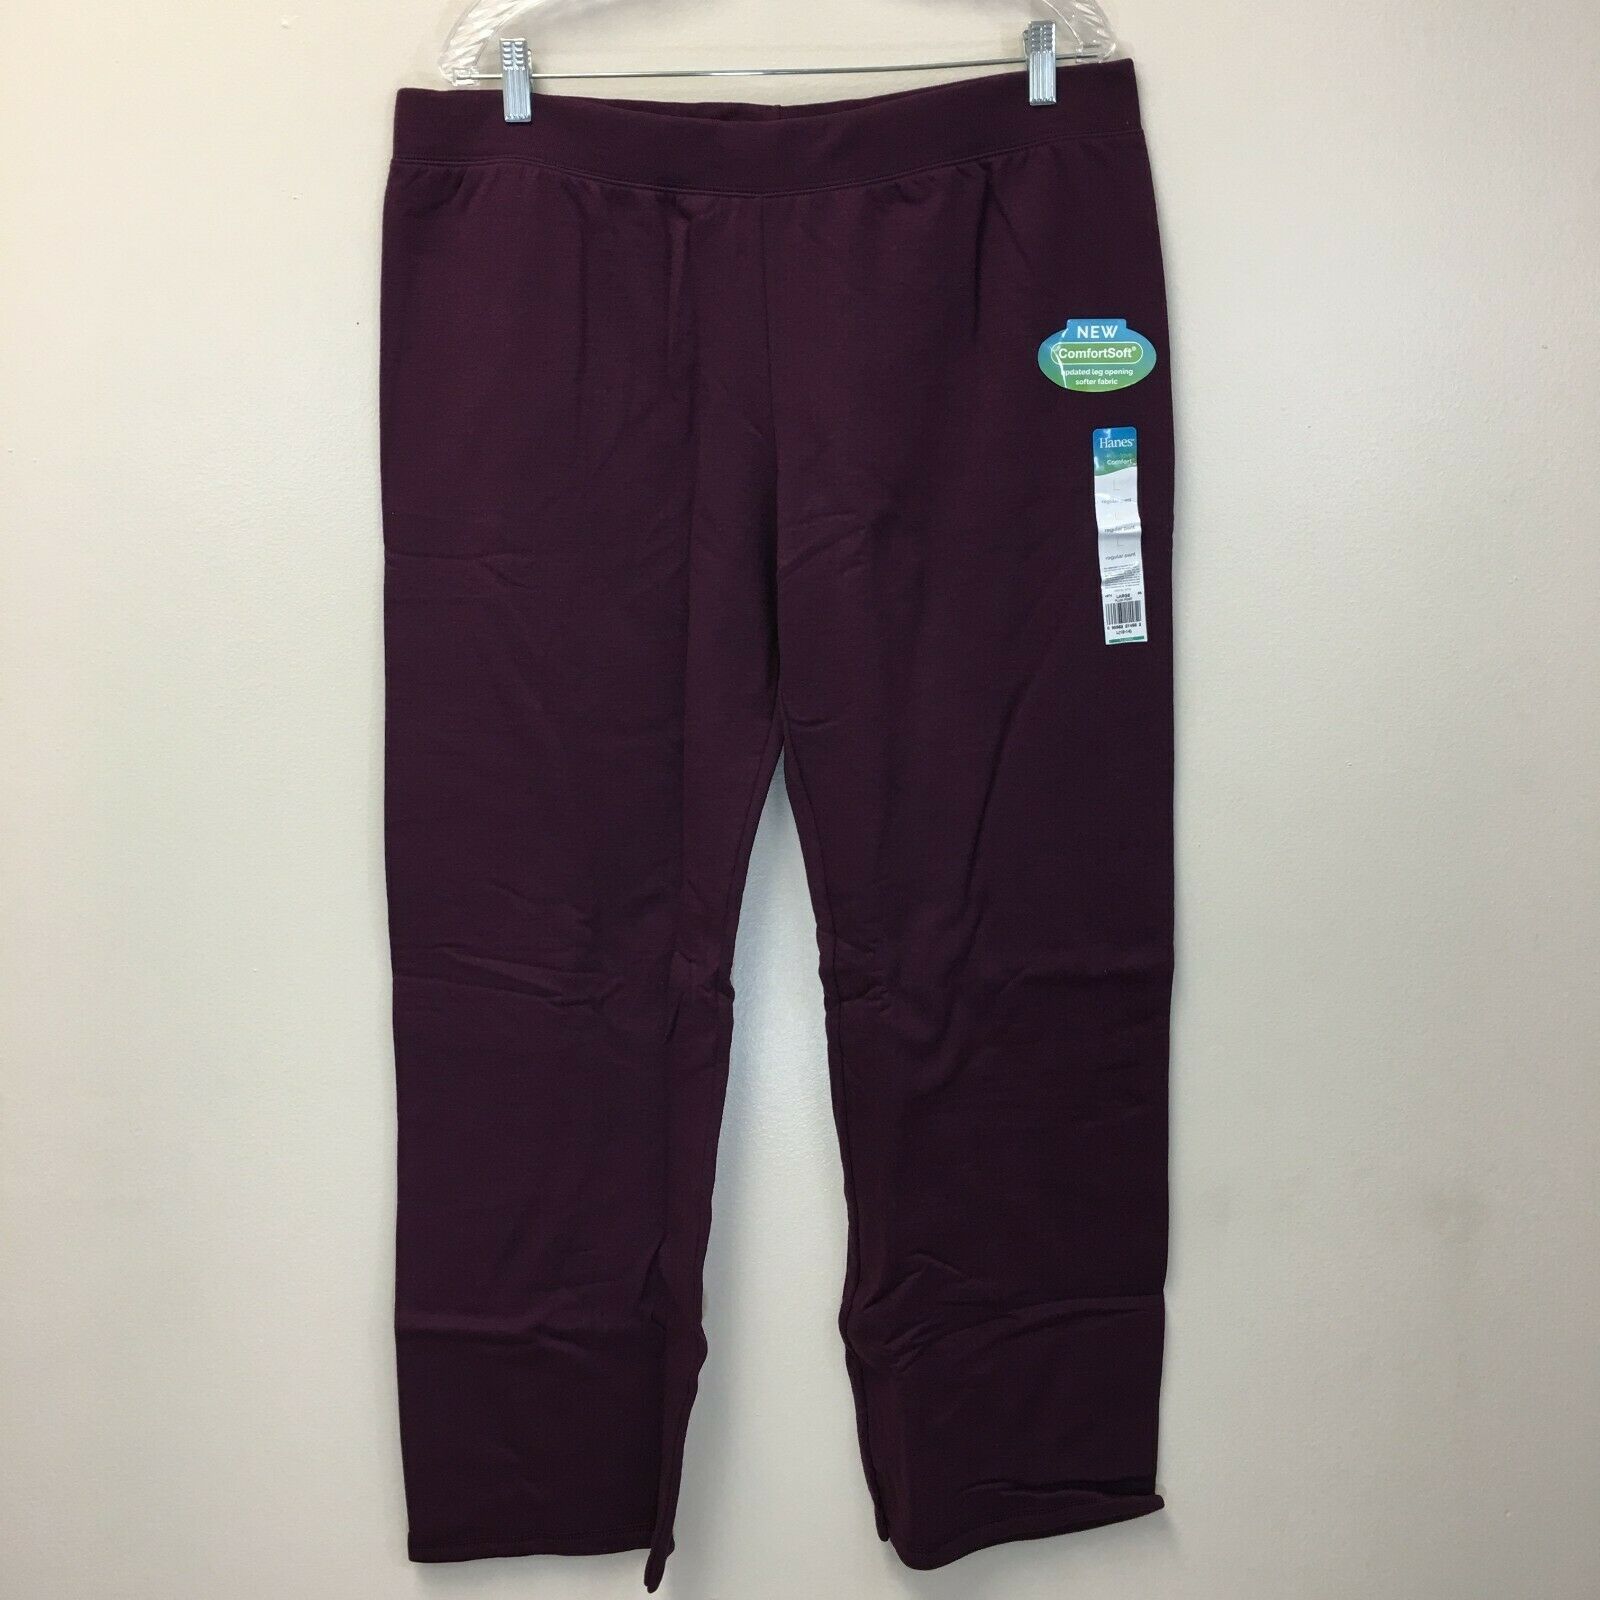 Hanes ComfortSoft Women's Open Bottom Leg Fleece Sweatpants, Purple, L (12-14)